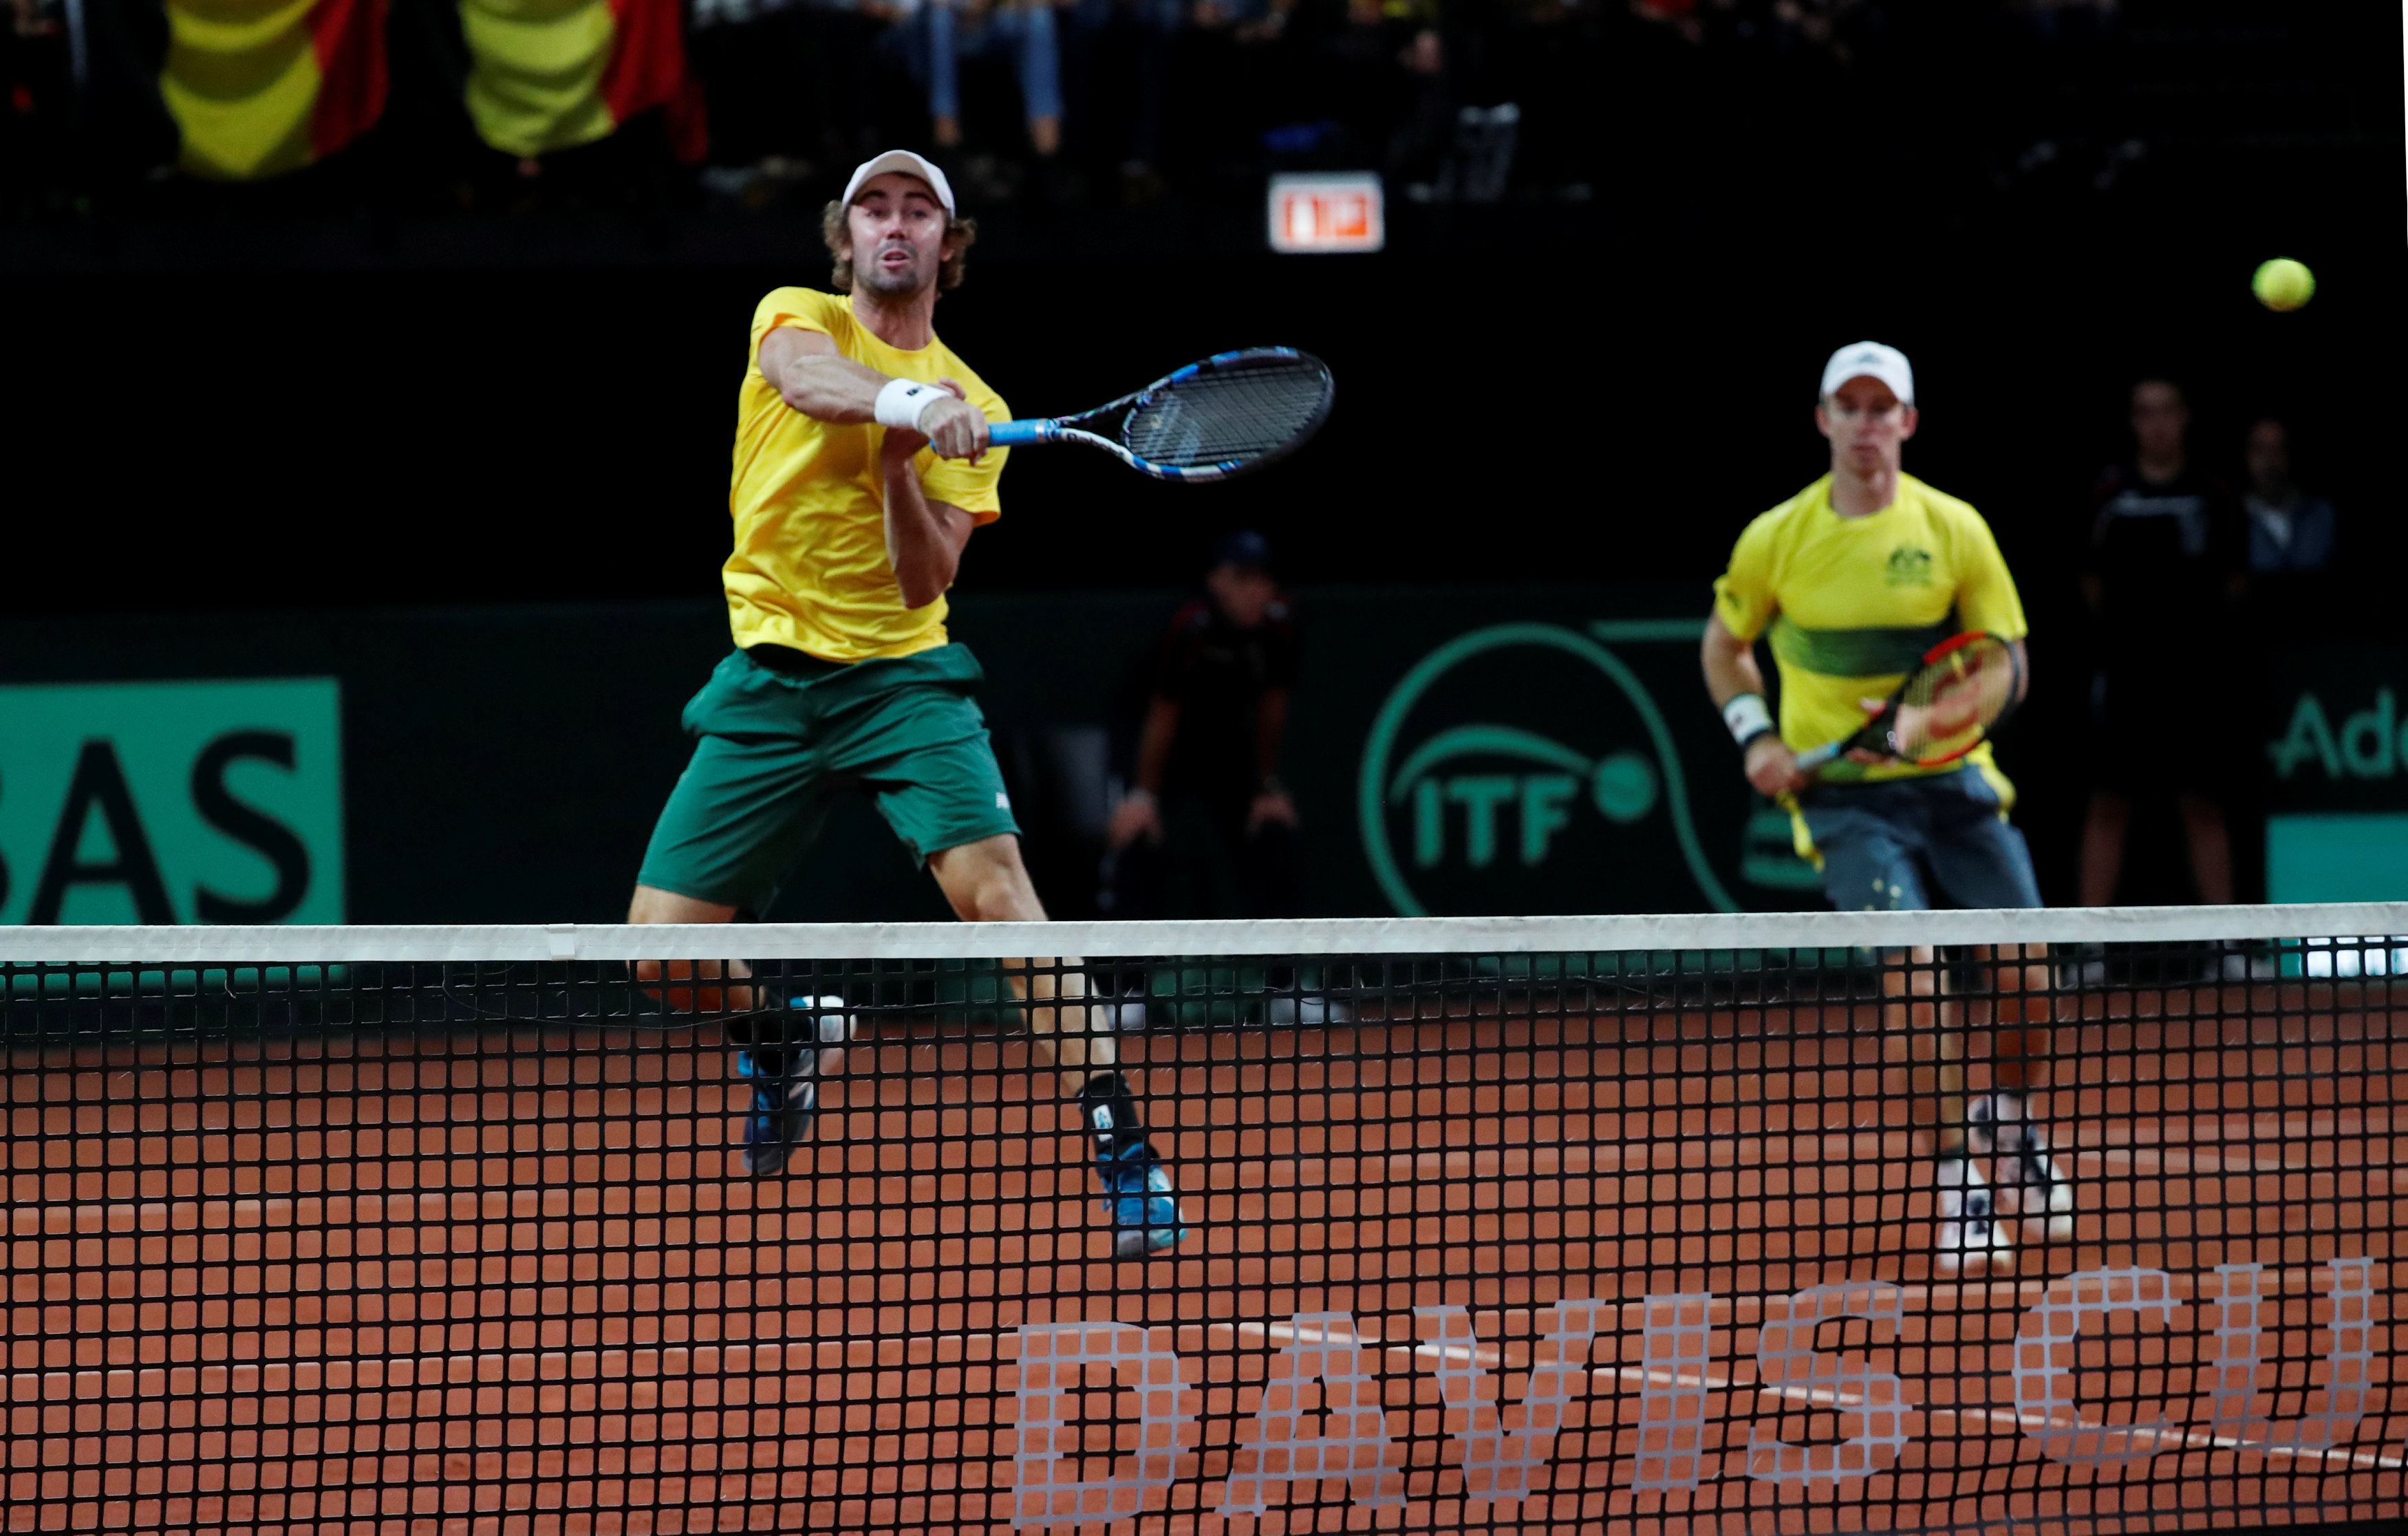 Tennis: Australia go 2-1 up in Davis Cup semifinal against Belgium